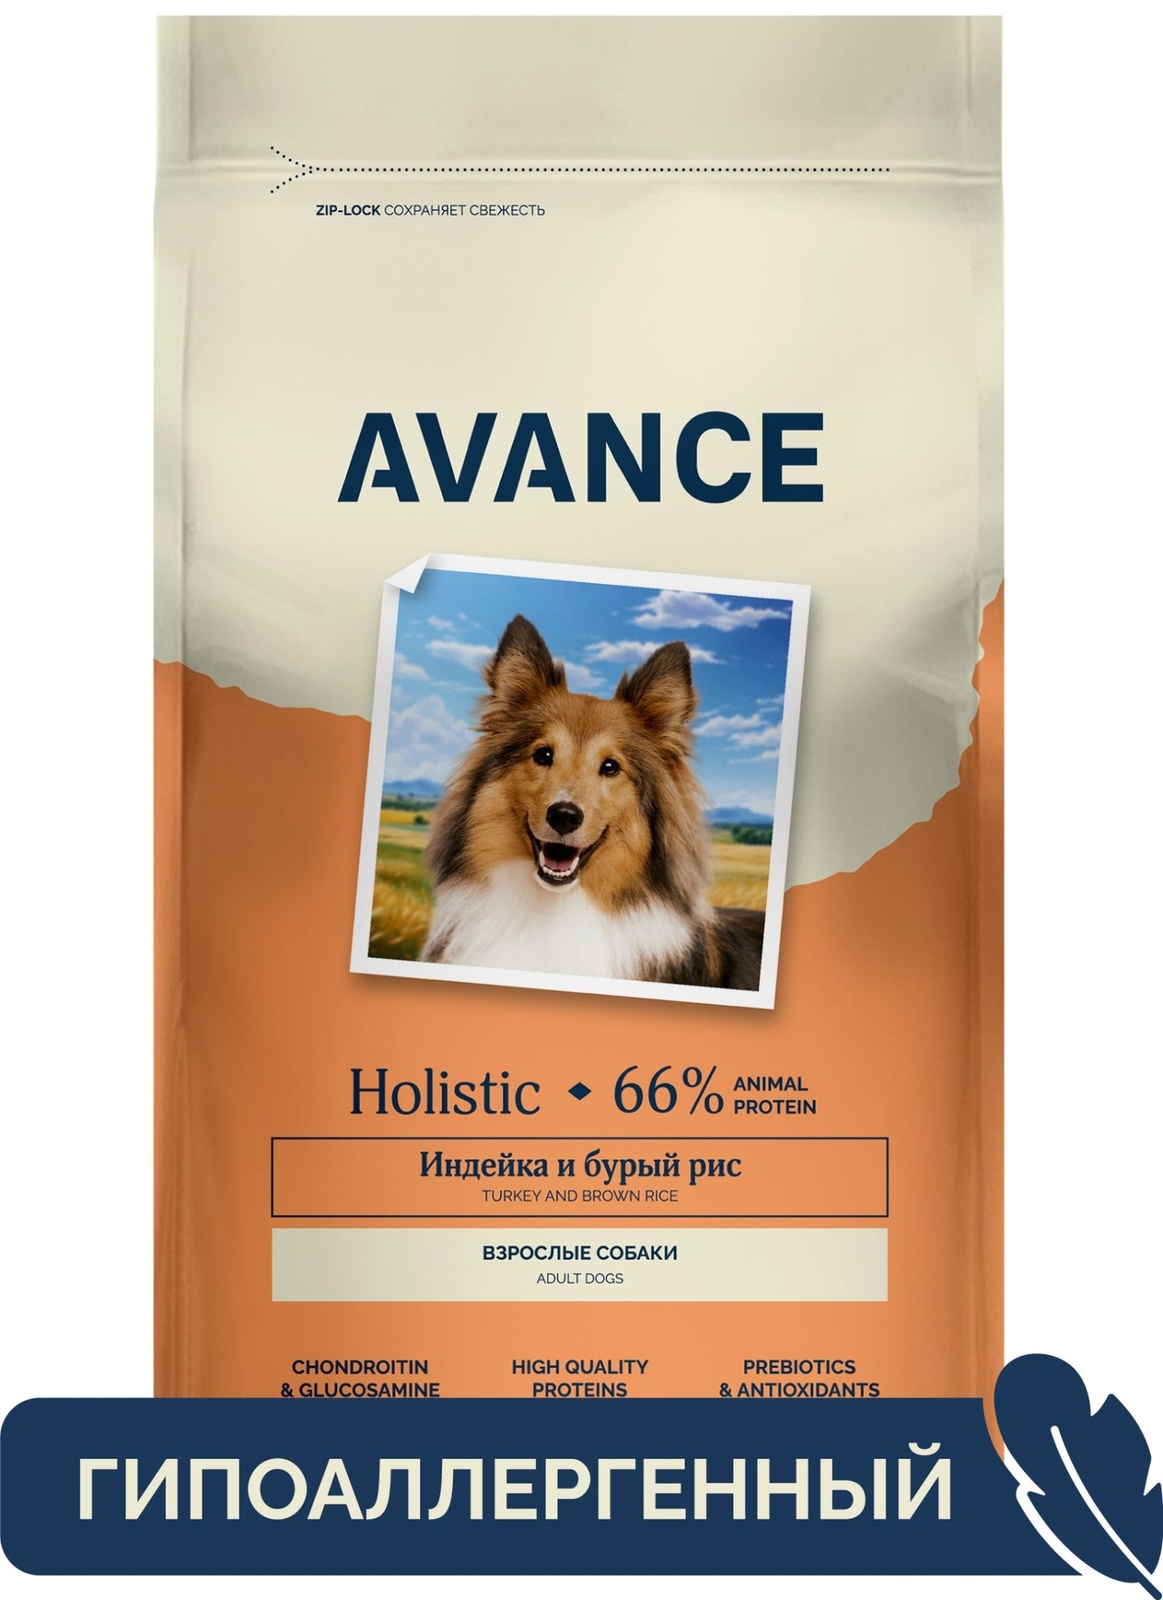 AVANCE holistic полнорационный сухой корм для взрослых собак с индейкой и бурым рисом (10 кг)